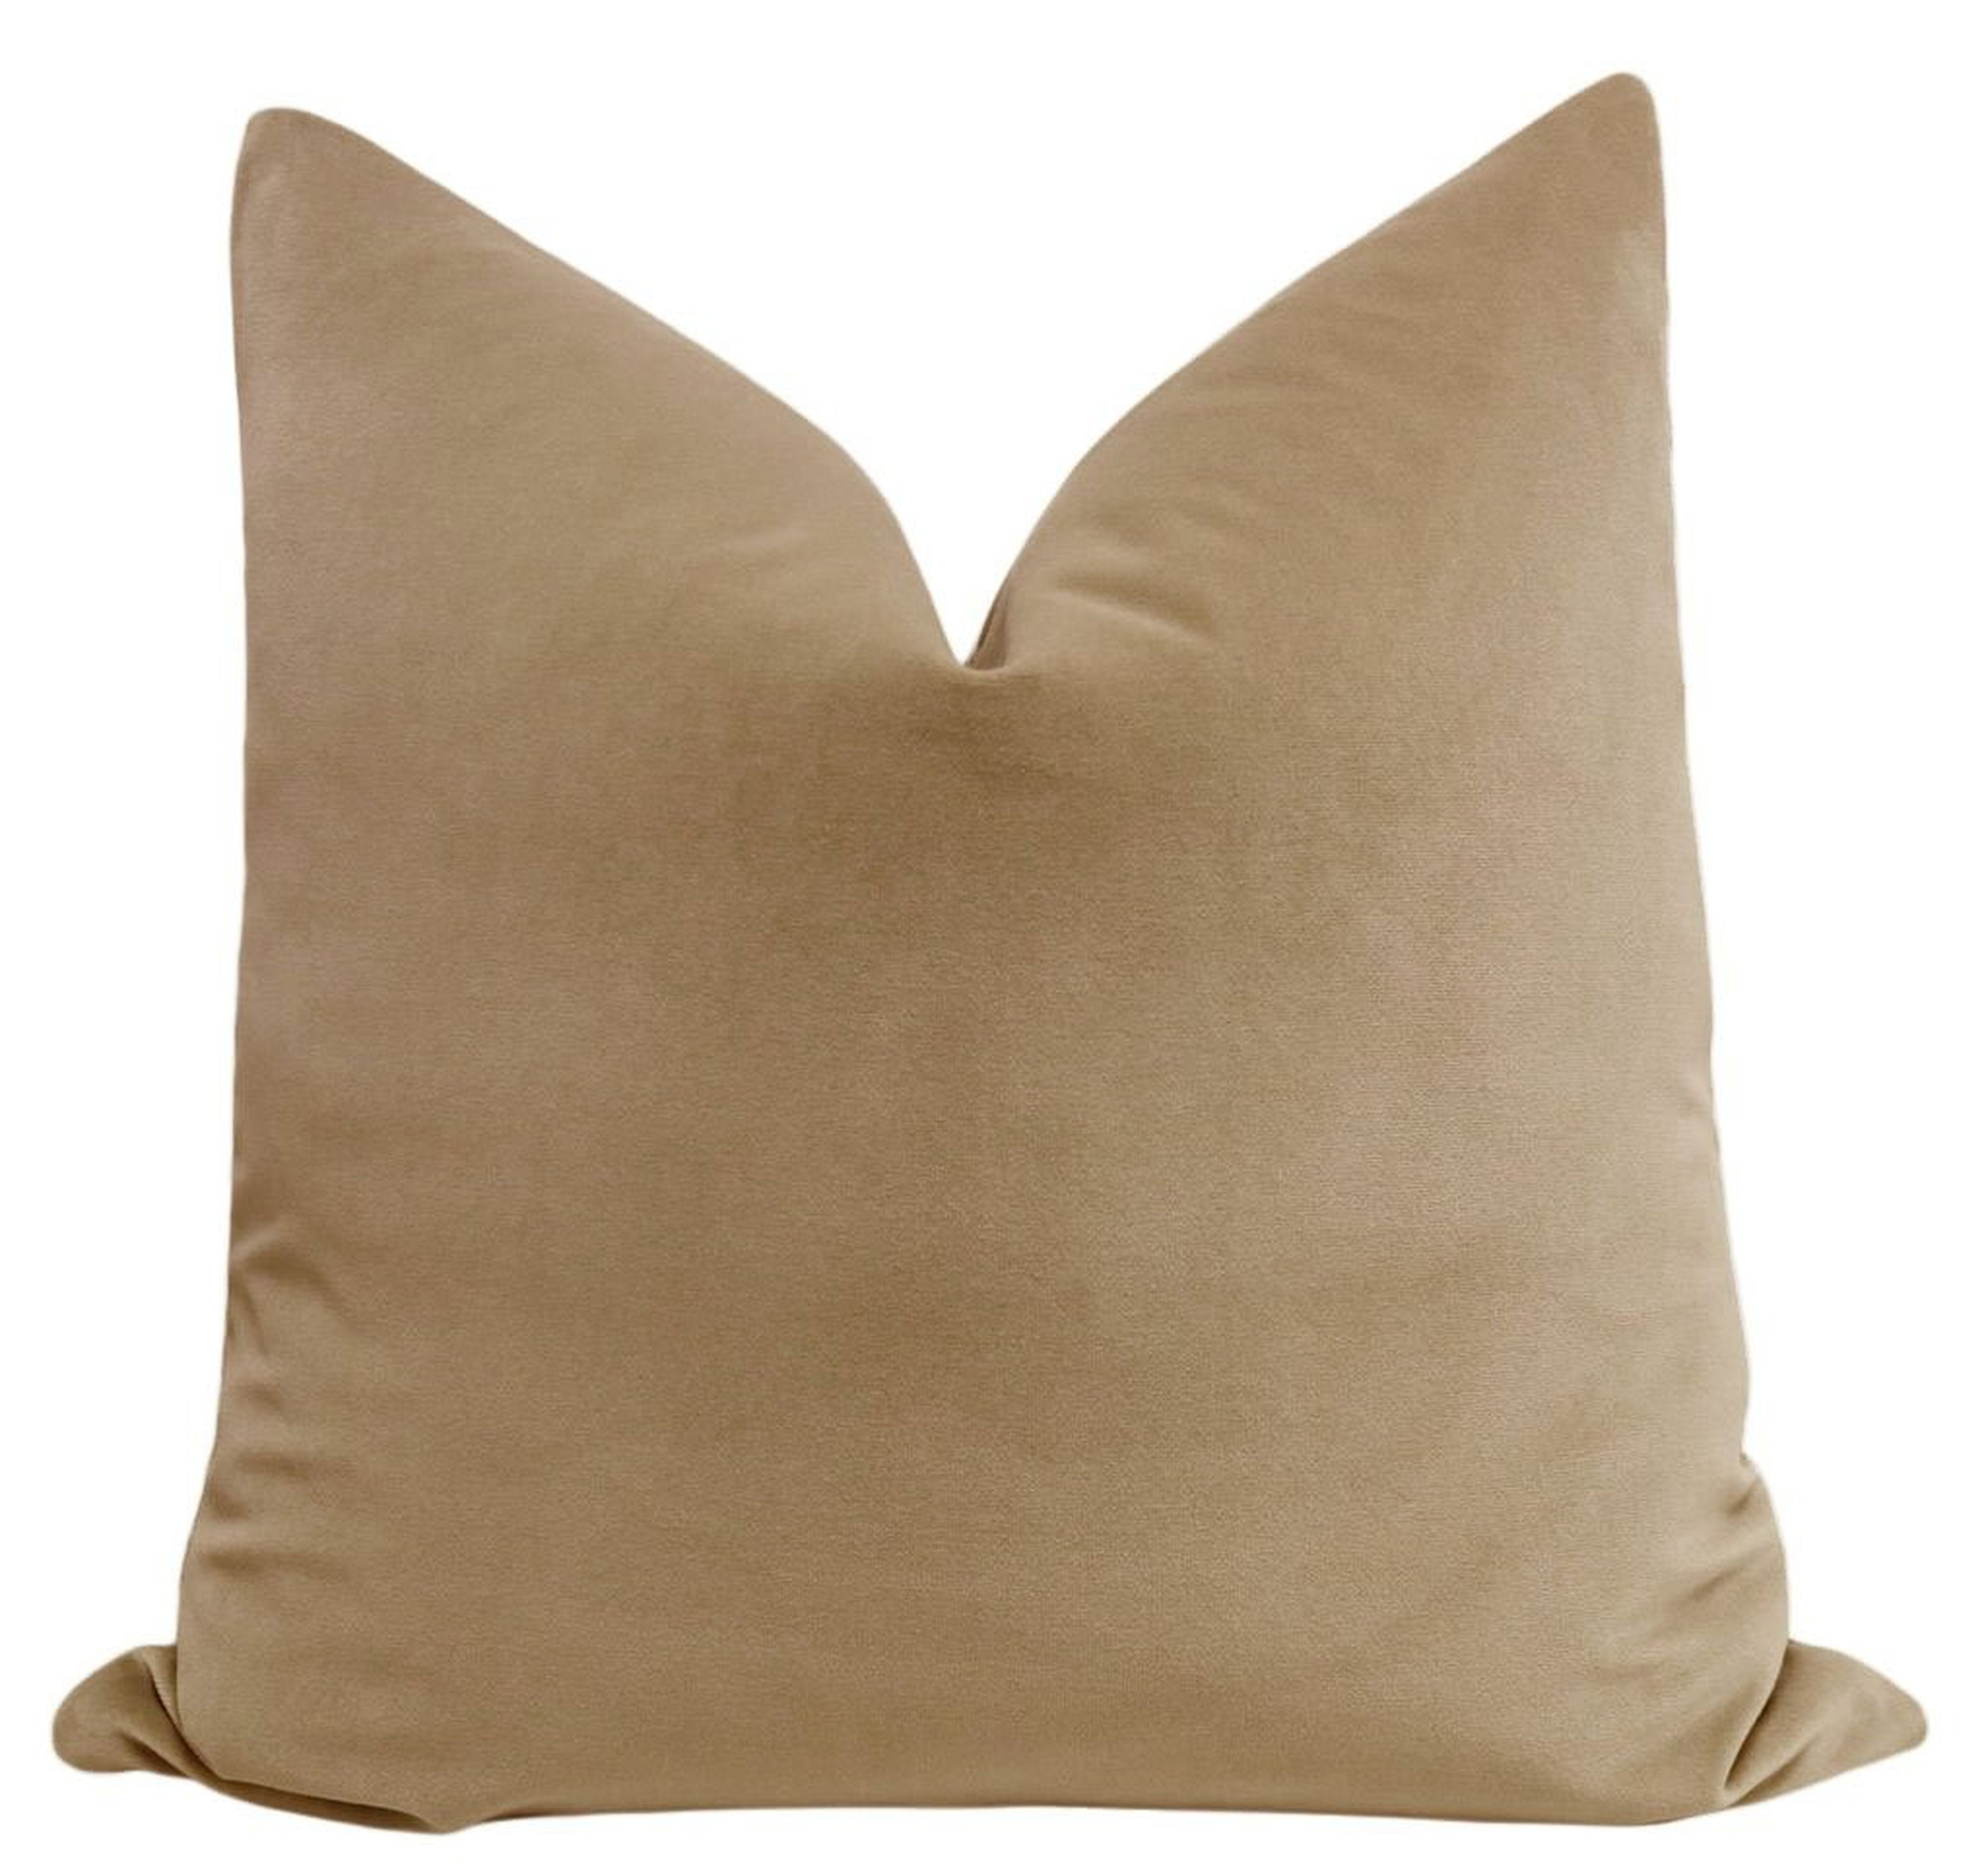 Signature Velvet // Nutmeg - 18" Pillow Cover - Little Design Company